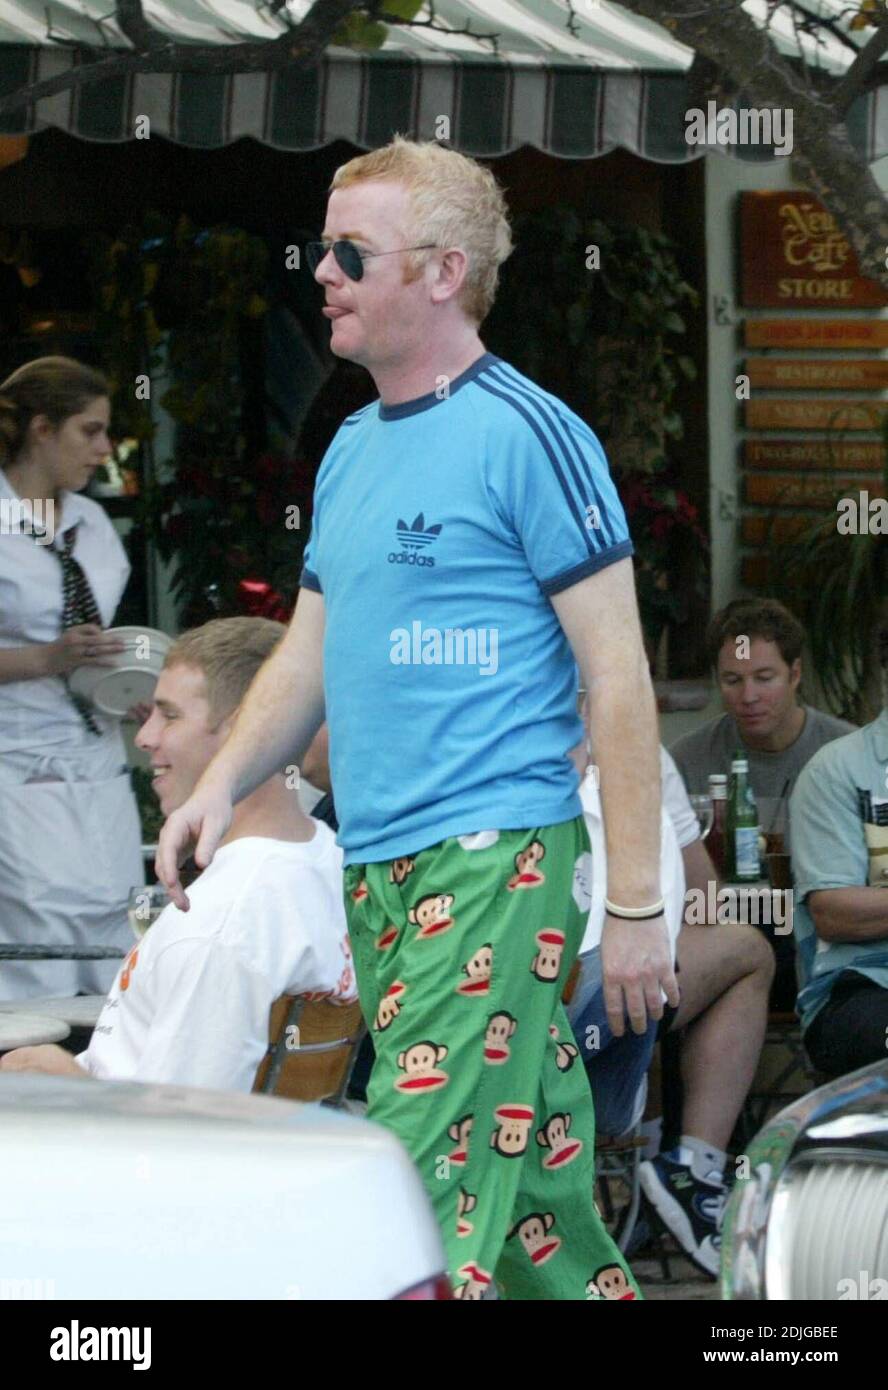 exclusivo! Chris Evans pasa una tarde con un amigo en el Hip News Cafe de  Miami. Chris llevaba pantalones de pijama de Paul Frank con caras de mono y  parecía beber agua